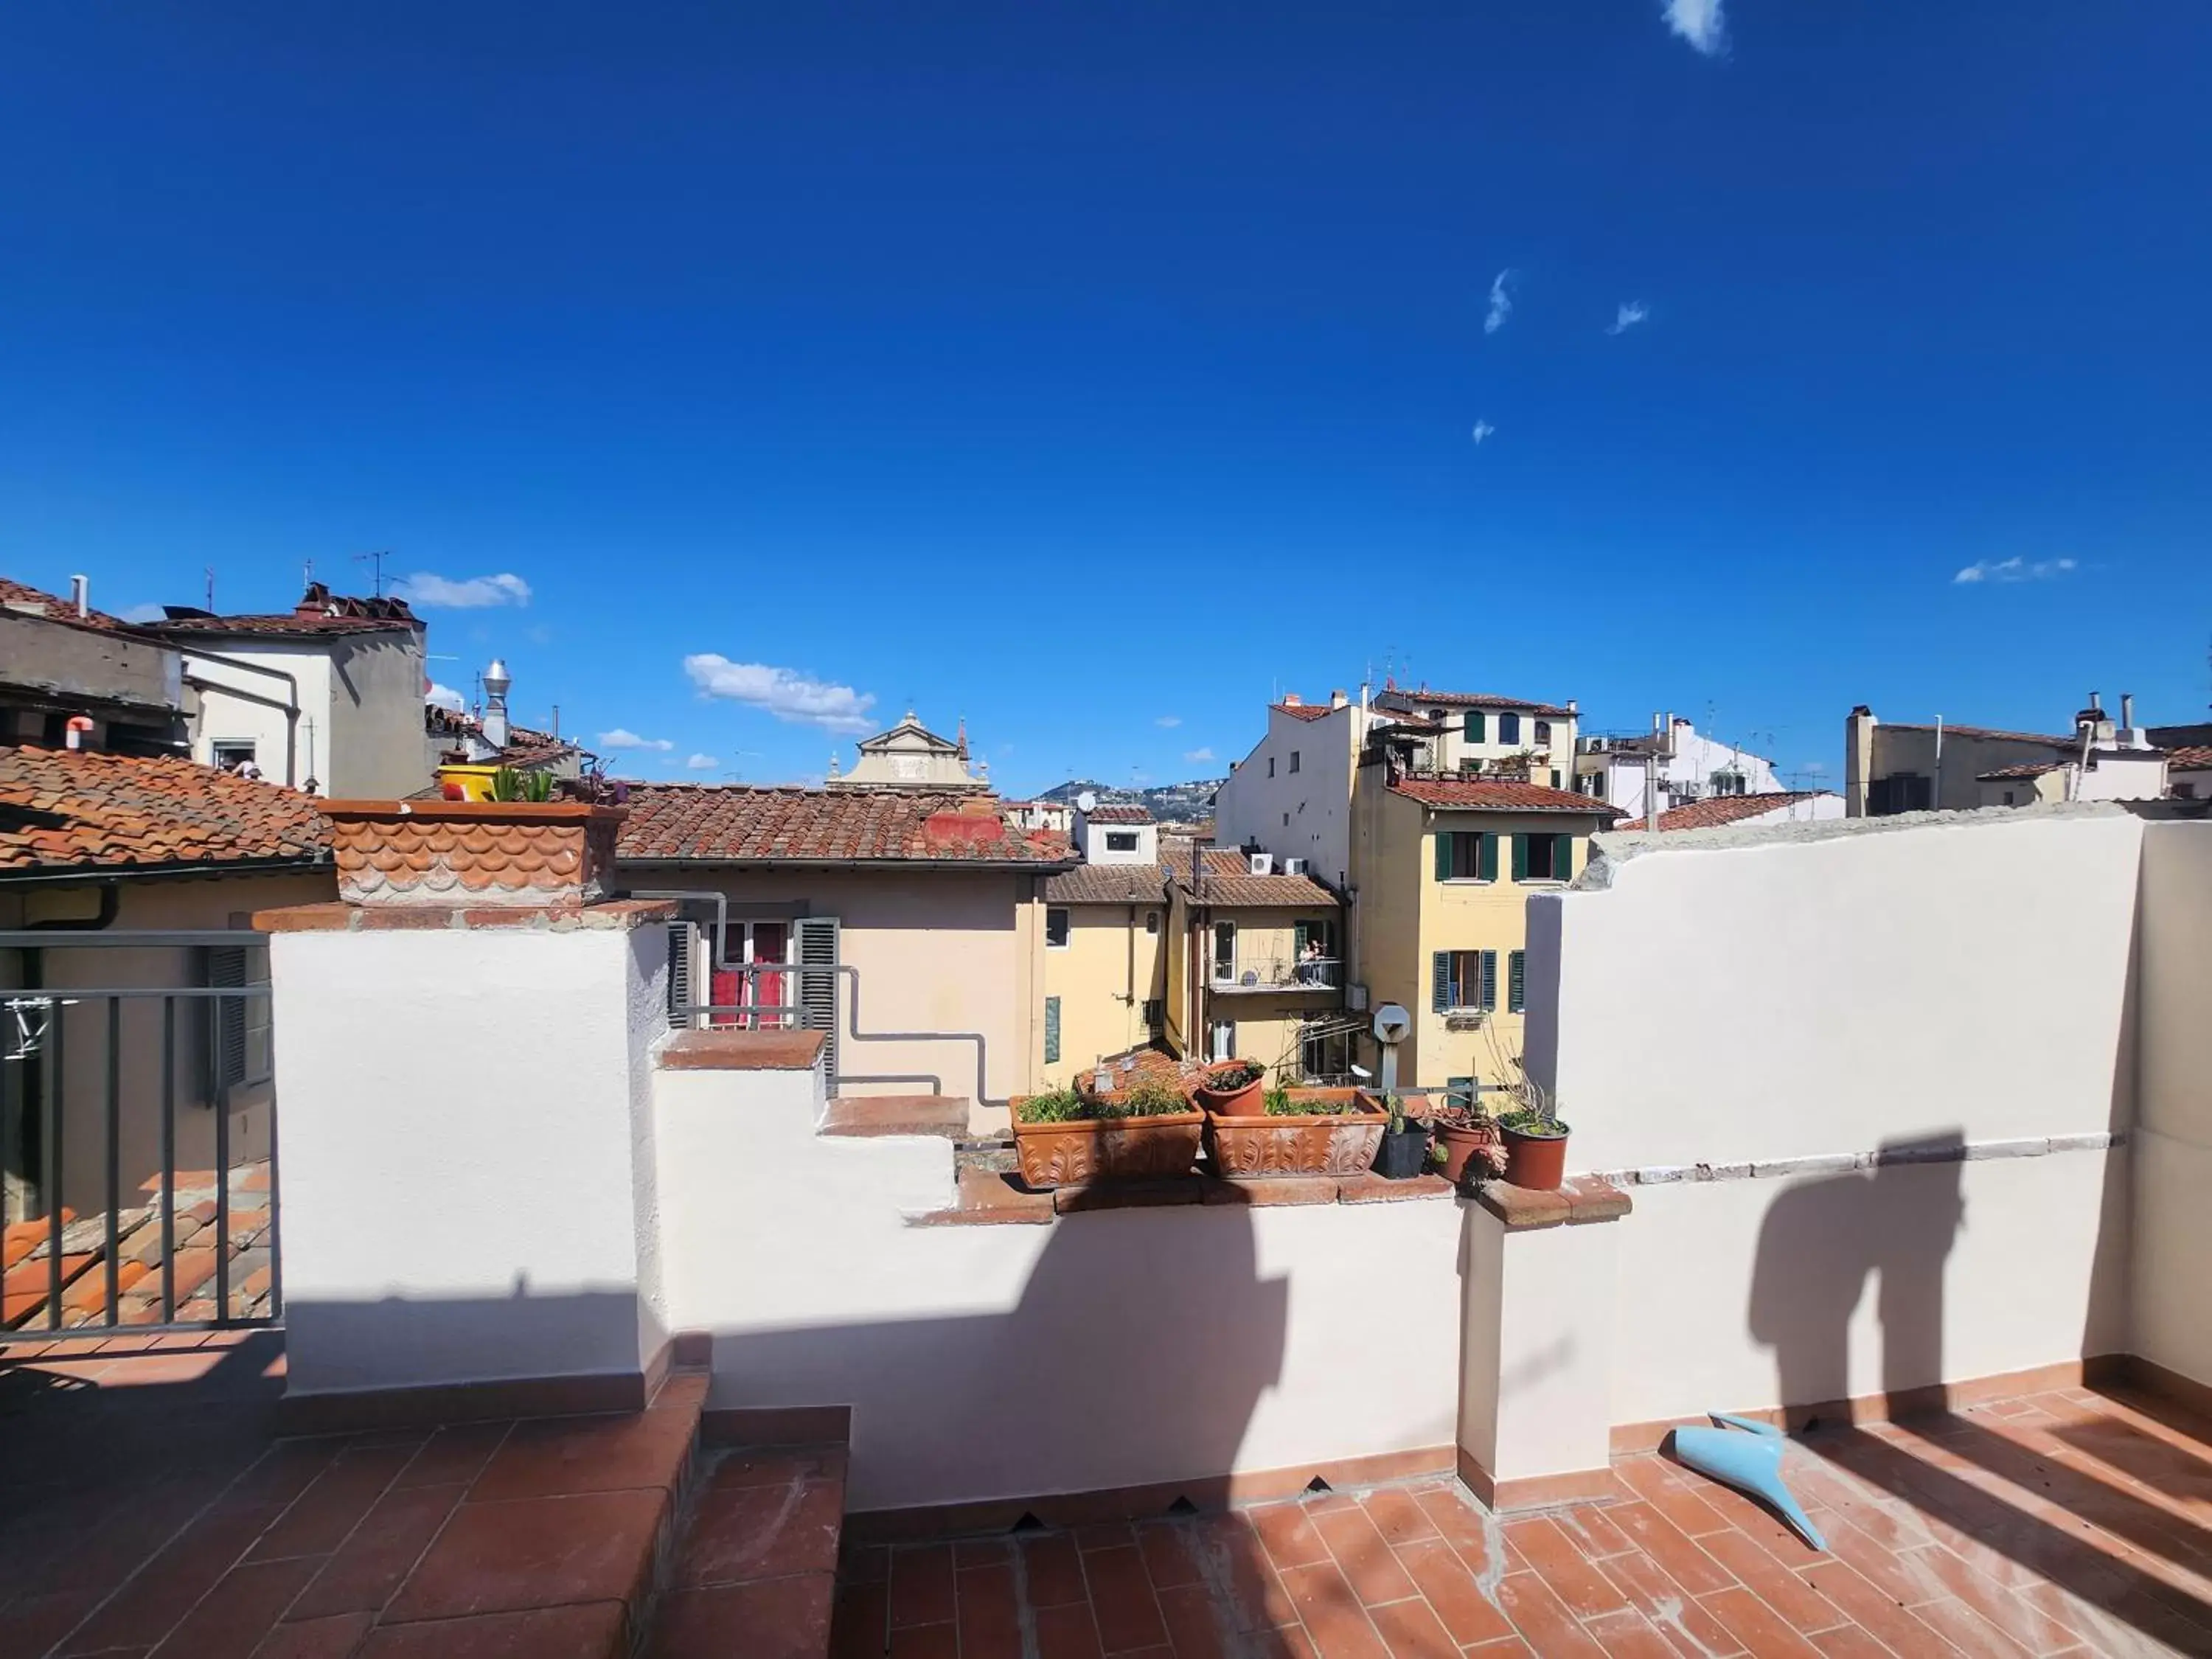 Balcony/Terrace in San Marco View